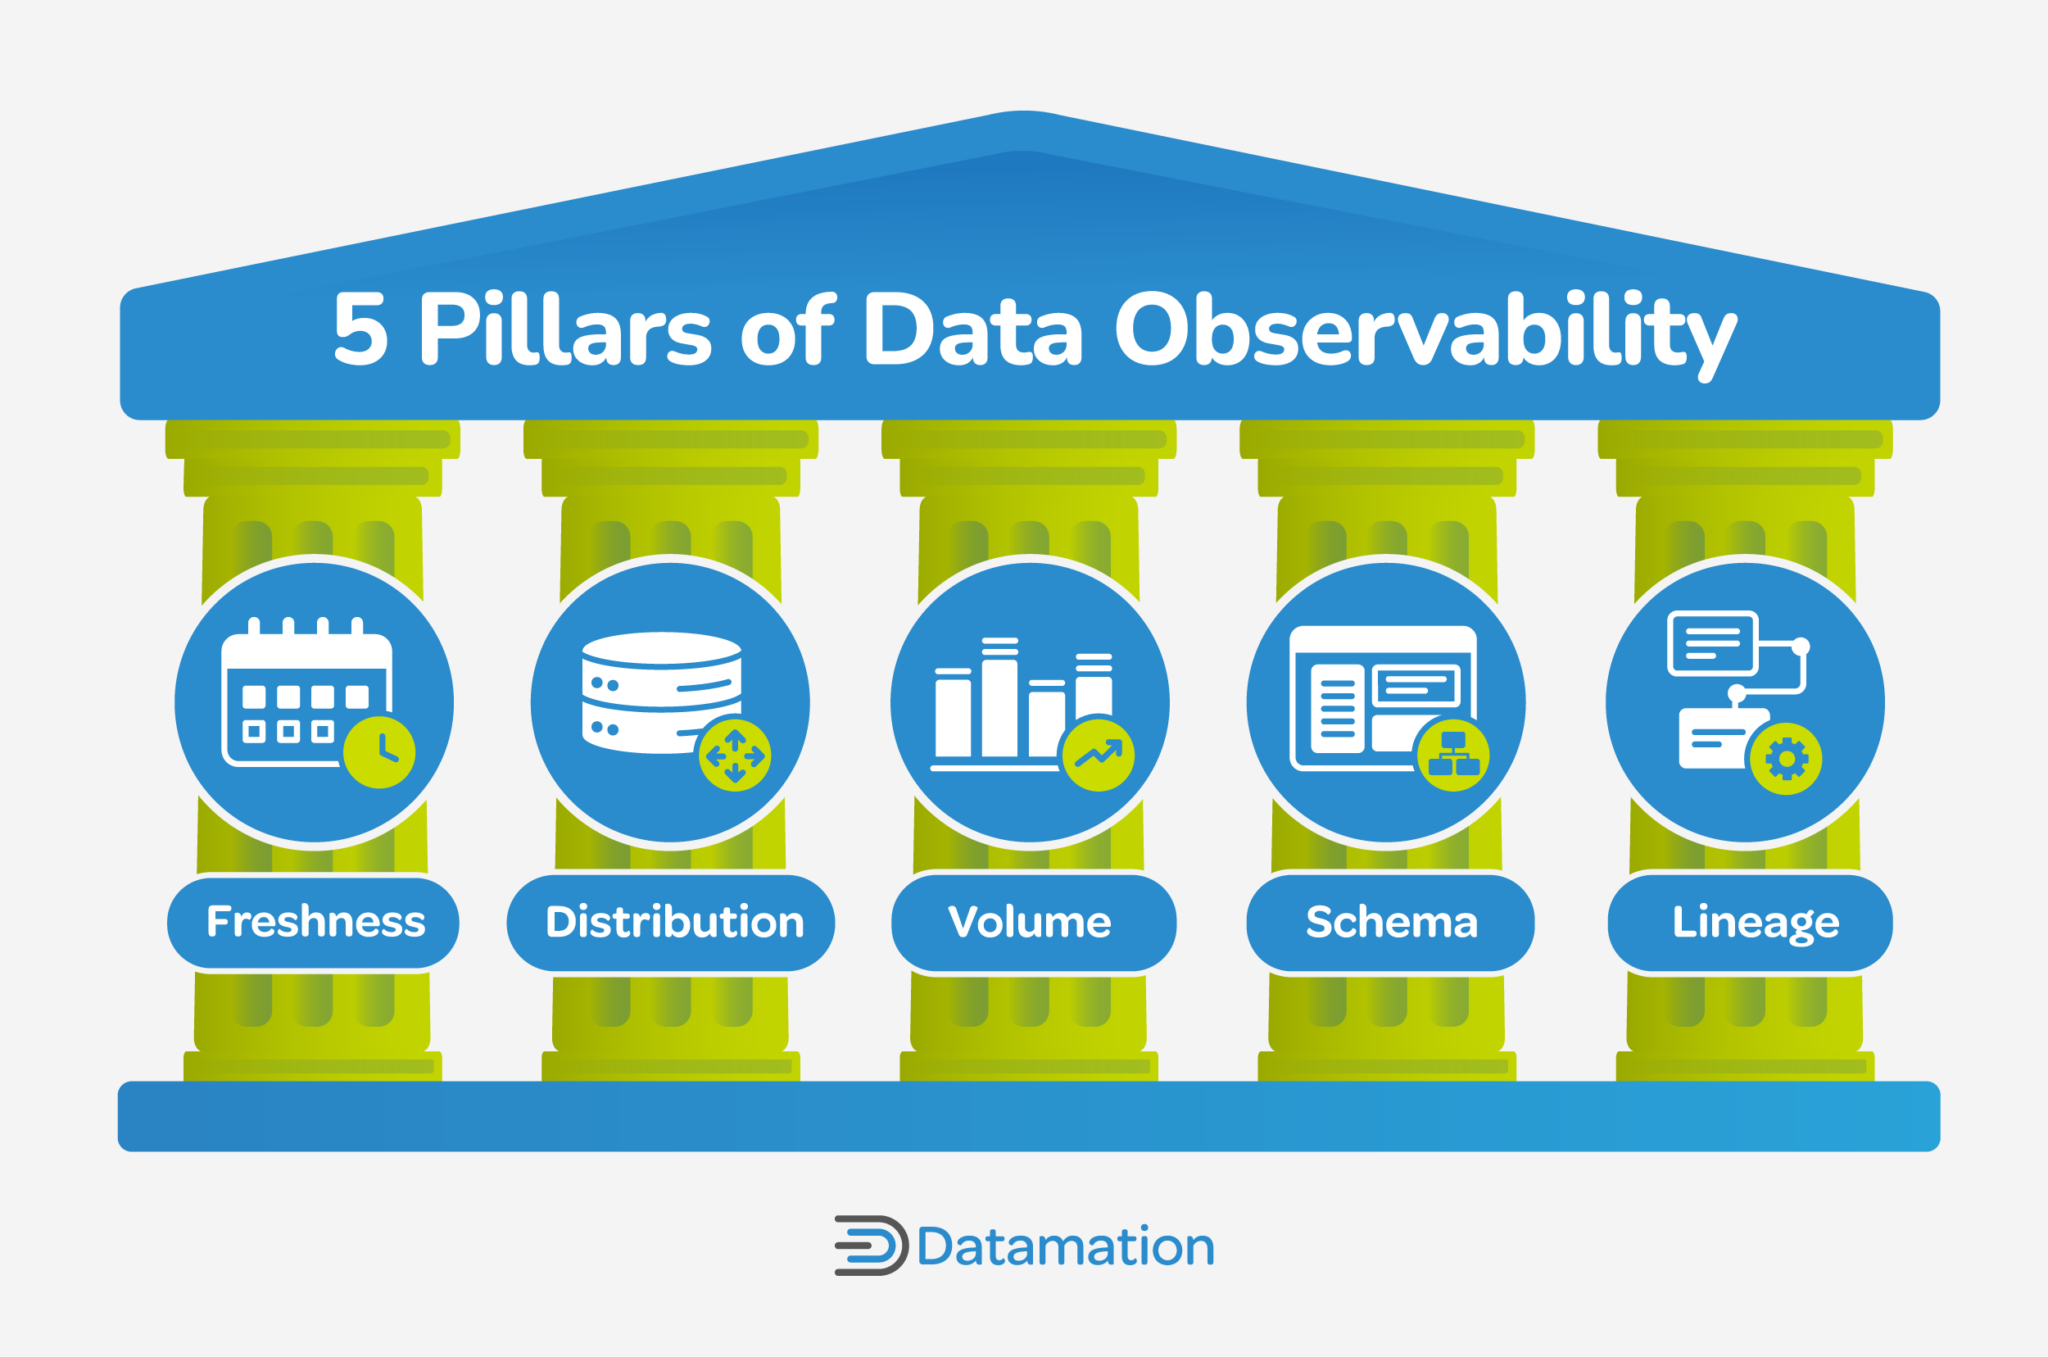 Datamation_5 Pillars of Data Observability